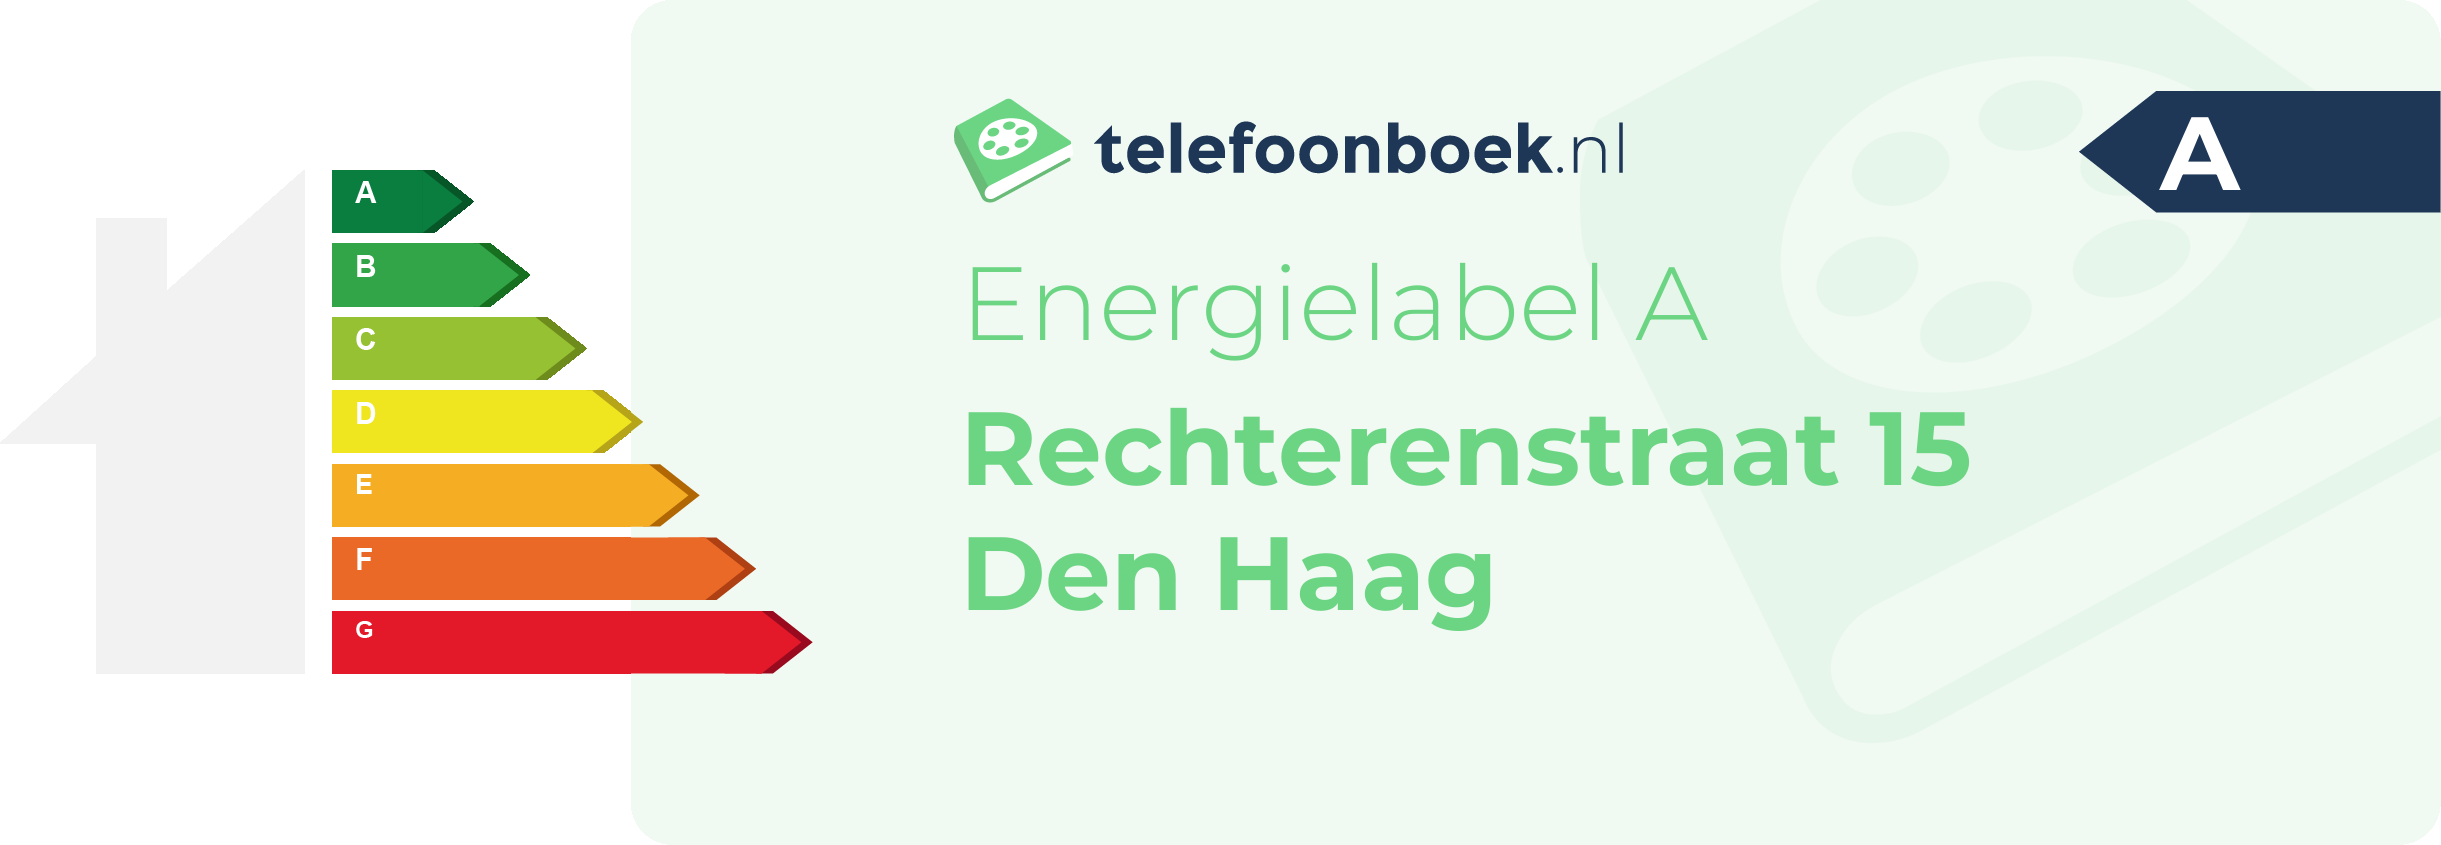 Energielabel Rechterenstraat 15 Den Haag